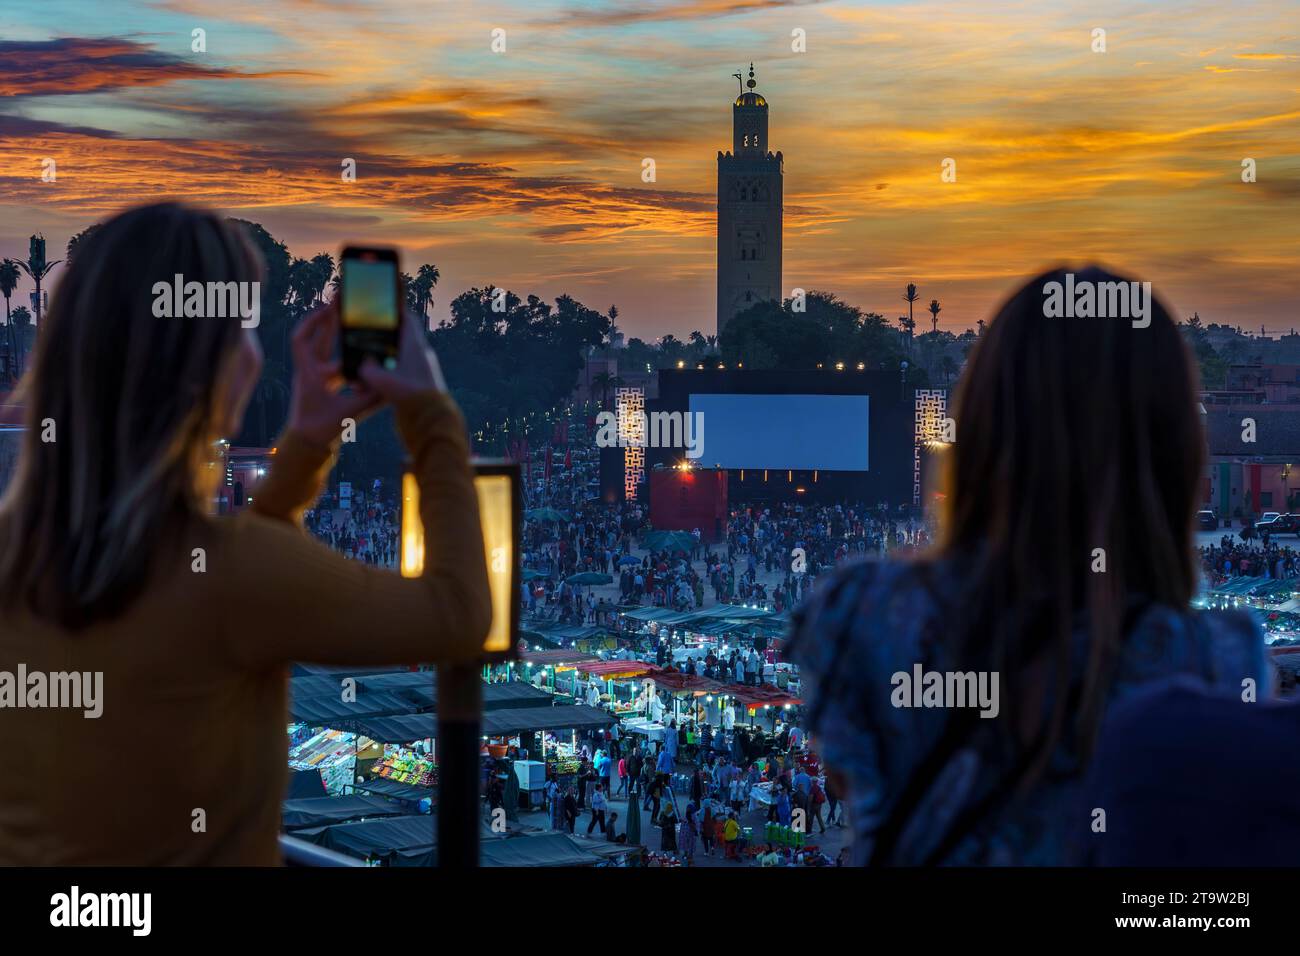 Afrique du Nord. Maroc. Marrakech. Femmes prenant des photos à la place Jemaa el fna au coucher du soleil Banque D'Images